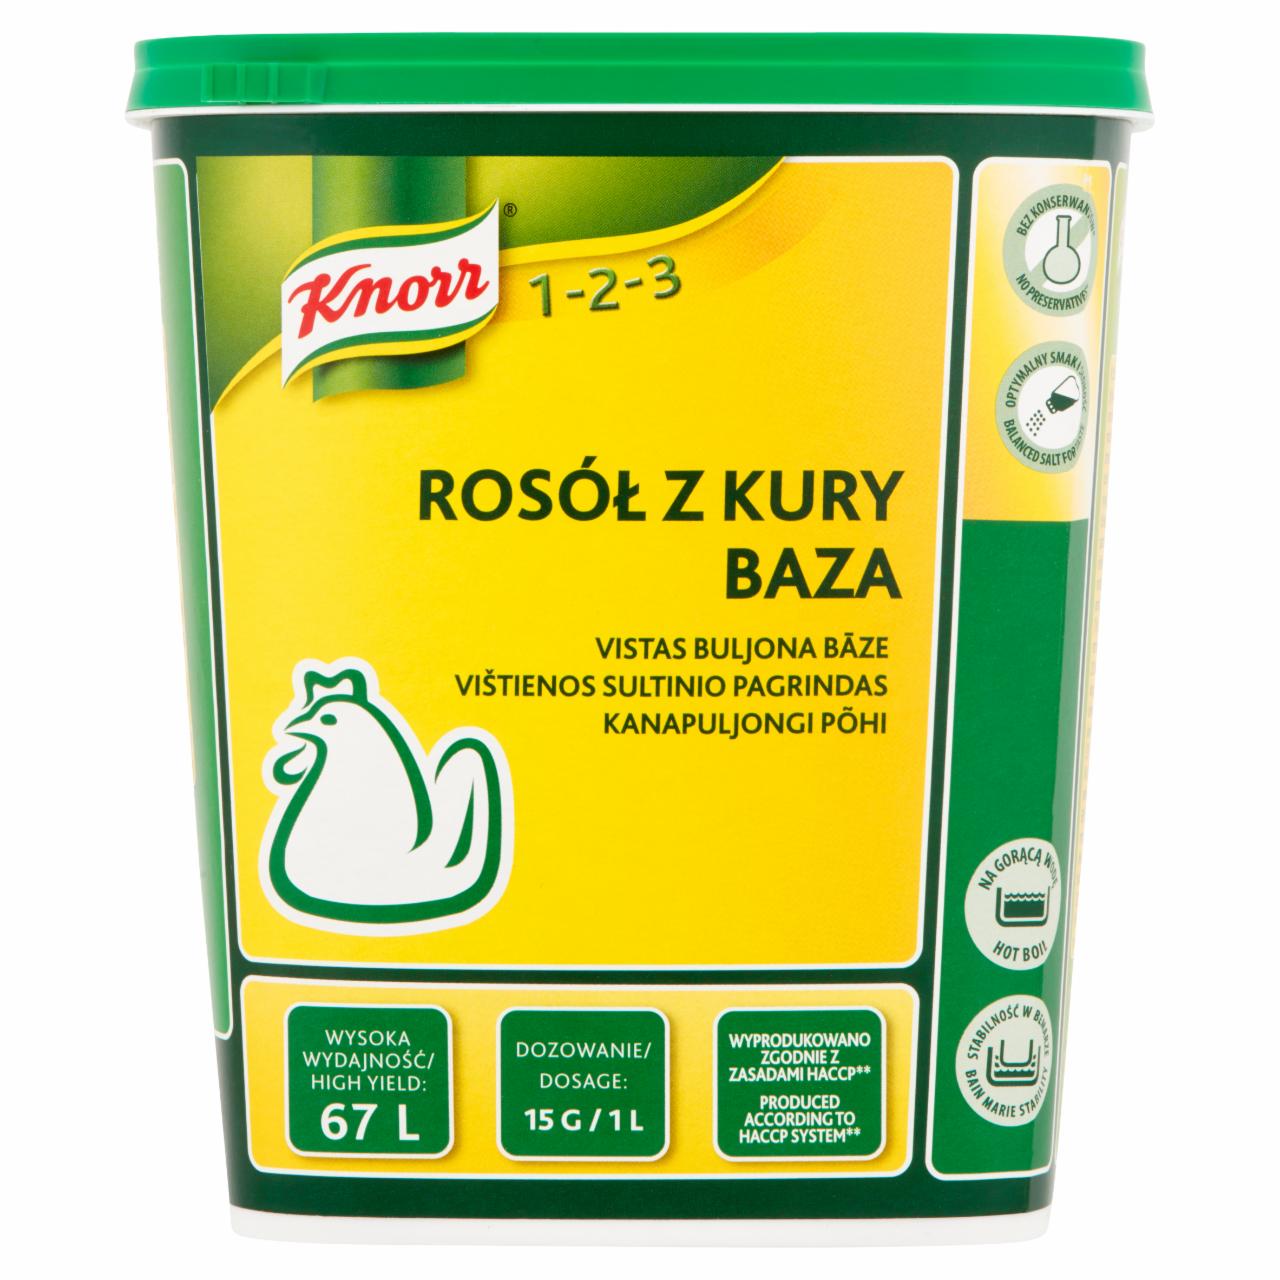 Zdjęcia - Knorr 1-2-3 Rosół z kury baza 1 kg